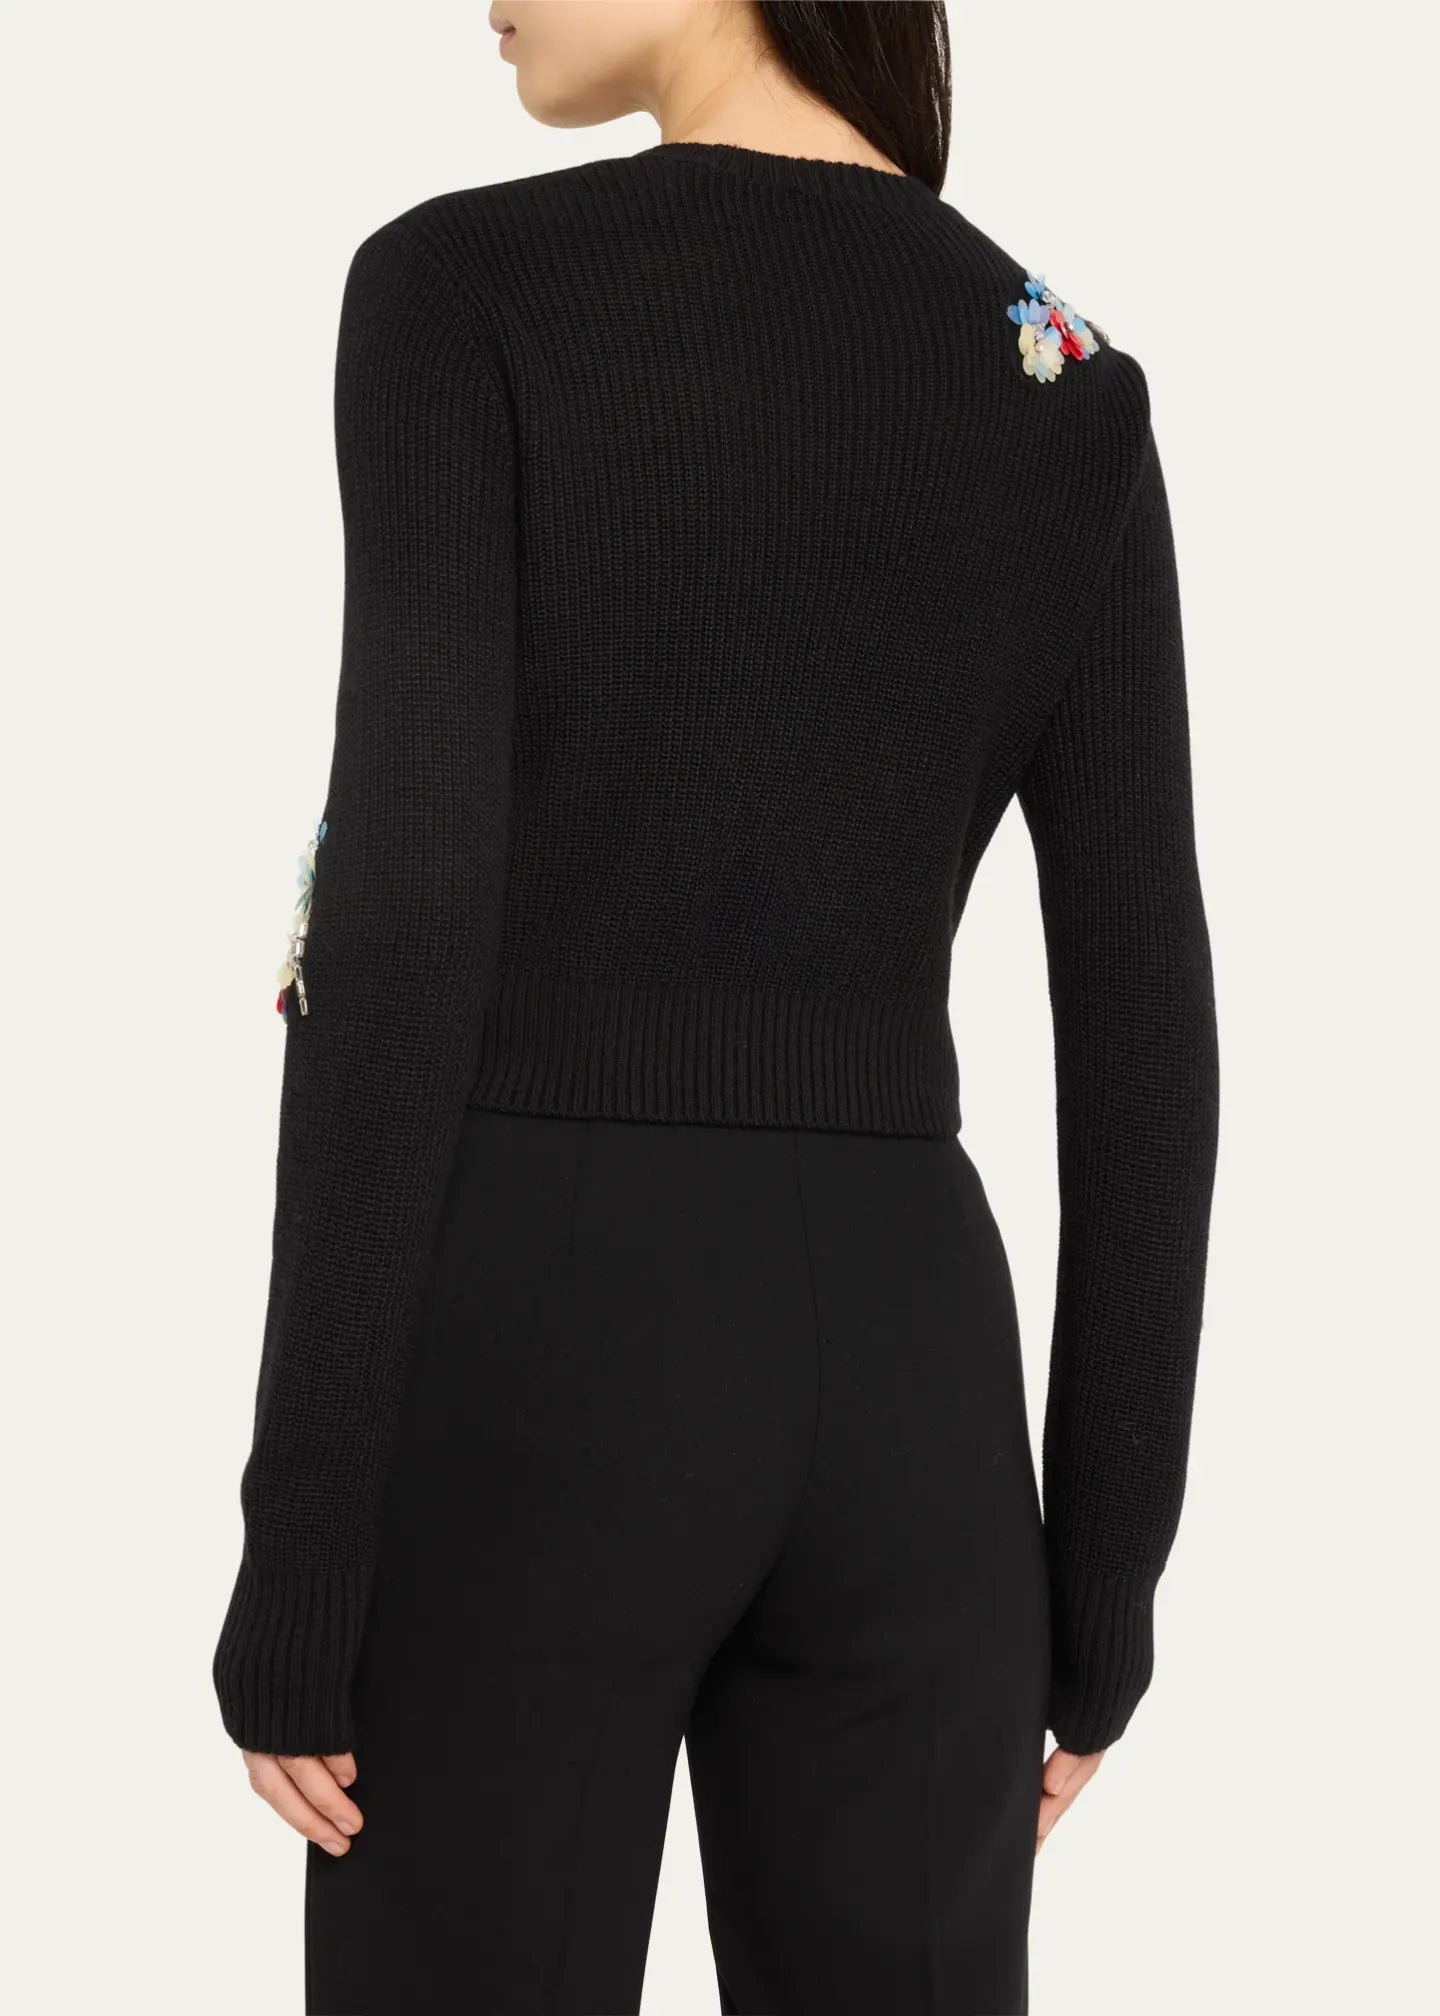 Cinq A Sept - Evie Crewneck Sweater - Black/Multi